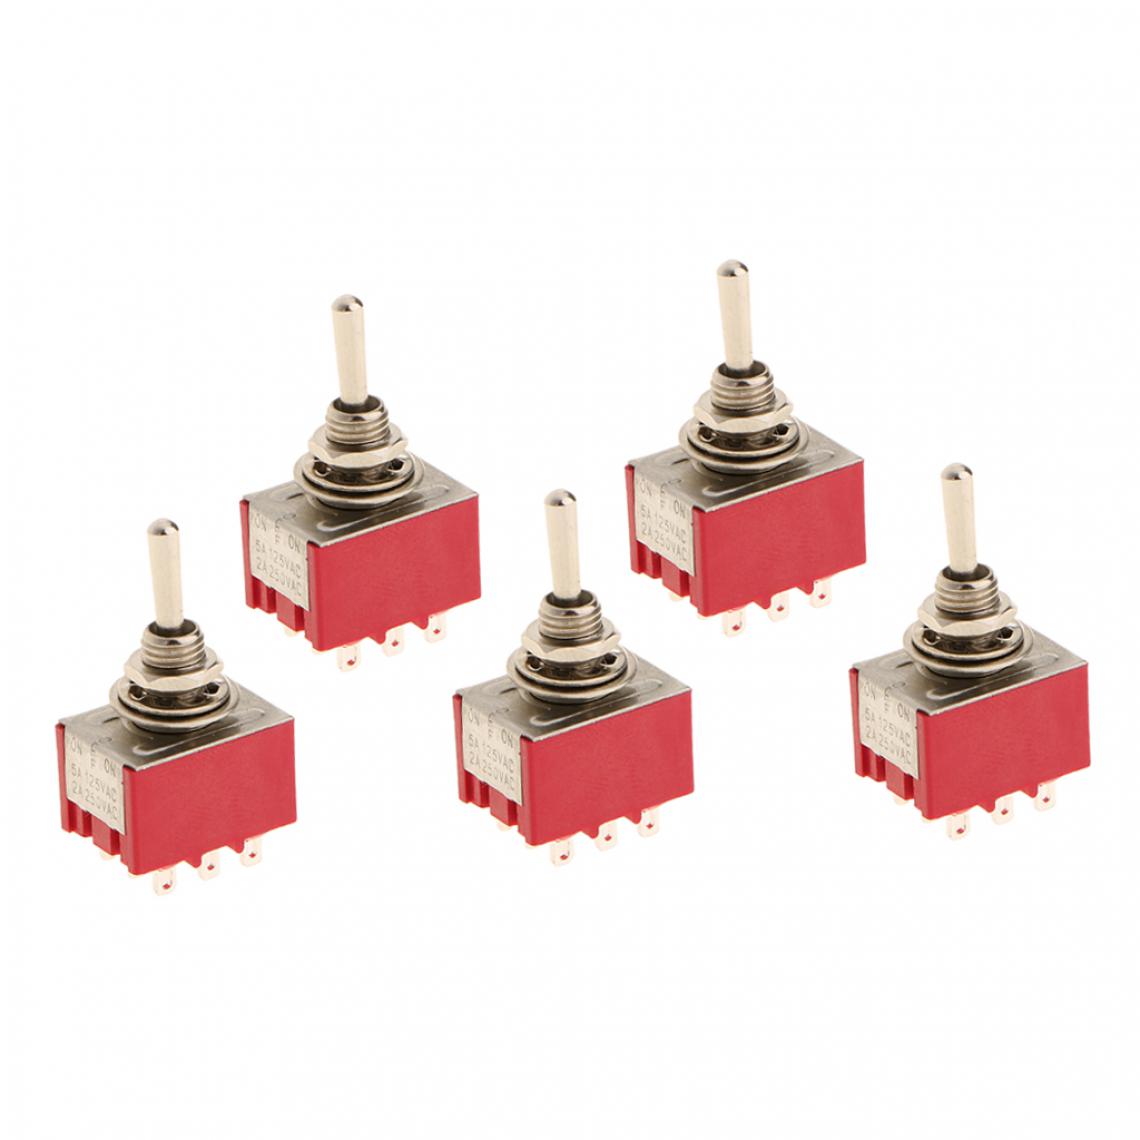 marque generique - On / Off / On Modèle 3PDT Rouge Pack De 5 à 9 Broches Petit Mini-interrupteur à Bascule - Switch